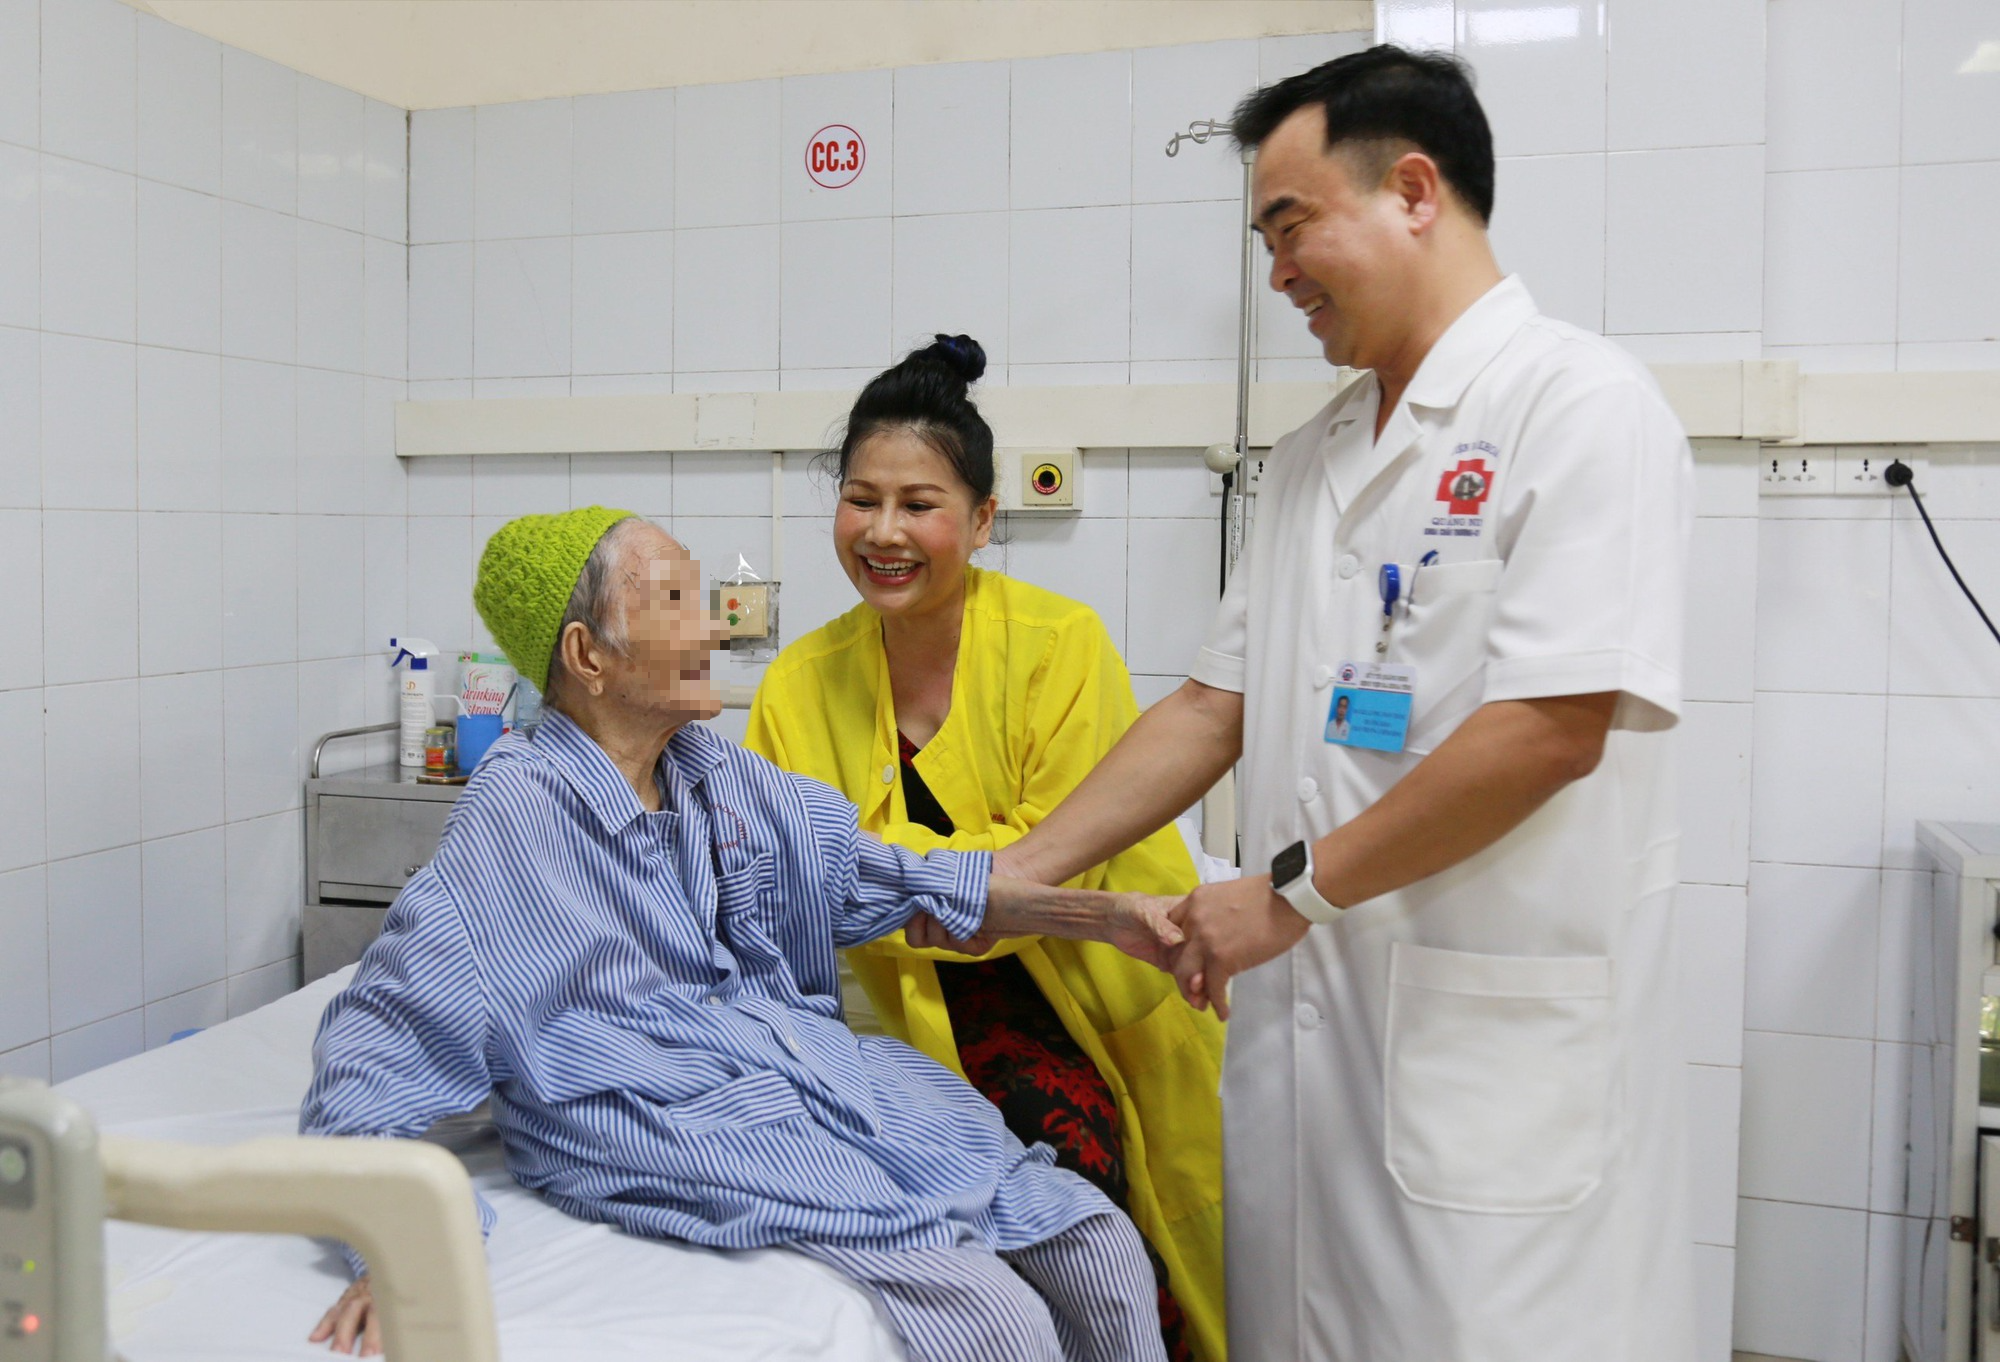 Ca phẫu thuật thay khớp háng nhân tạo đầy thách thức cho cụ bà 107 tuổi - Ảnh 3.